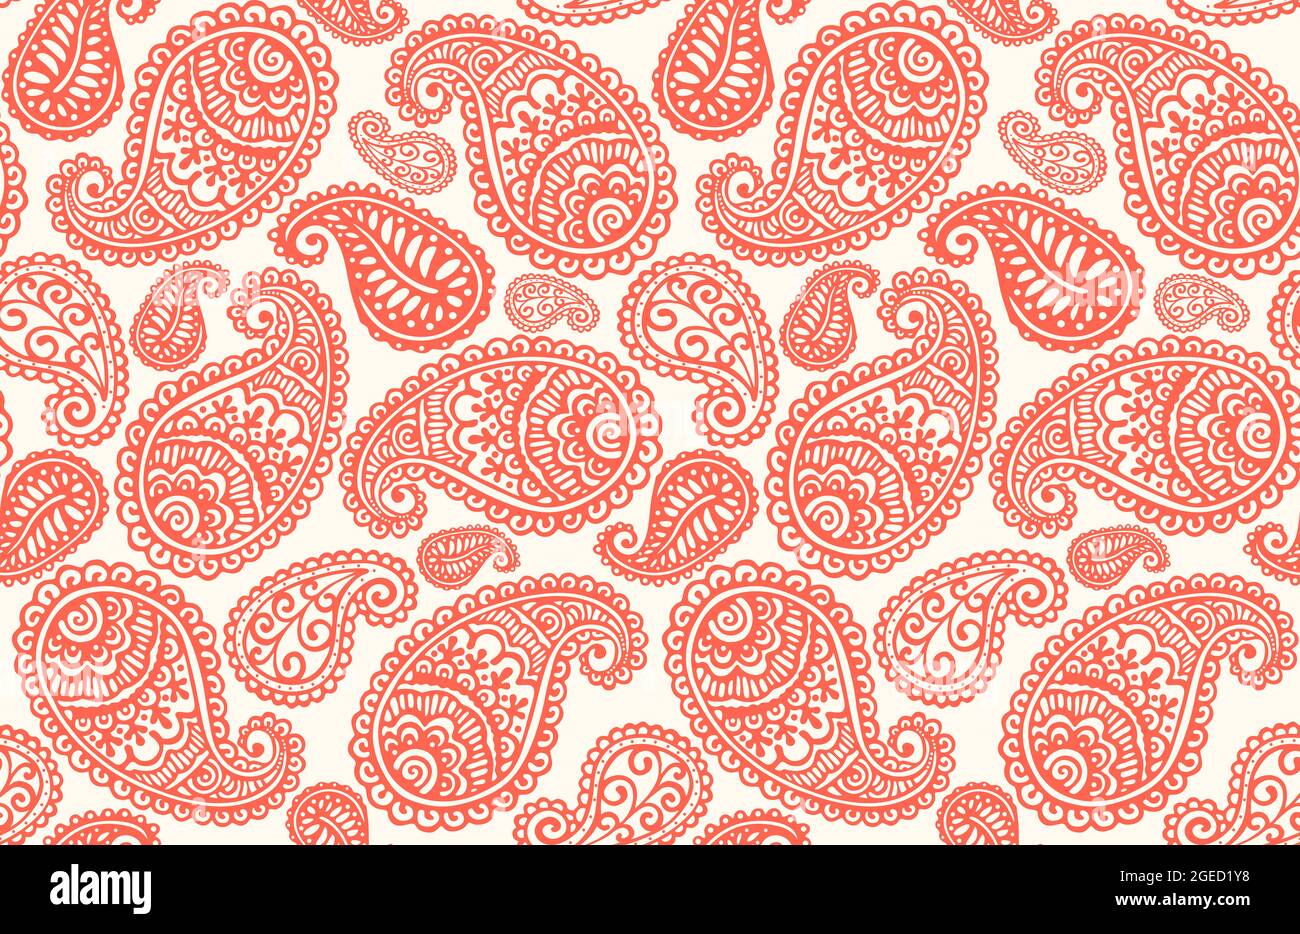 Seamless pattern with Paisley motifs Stock Photo